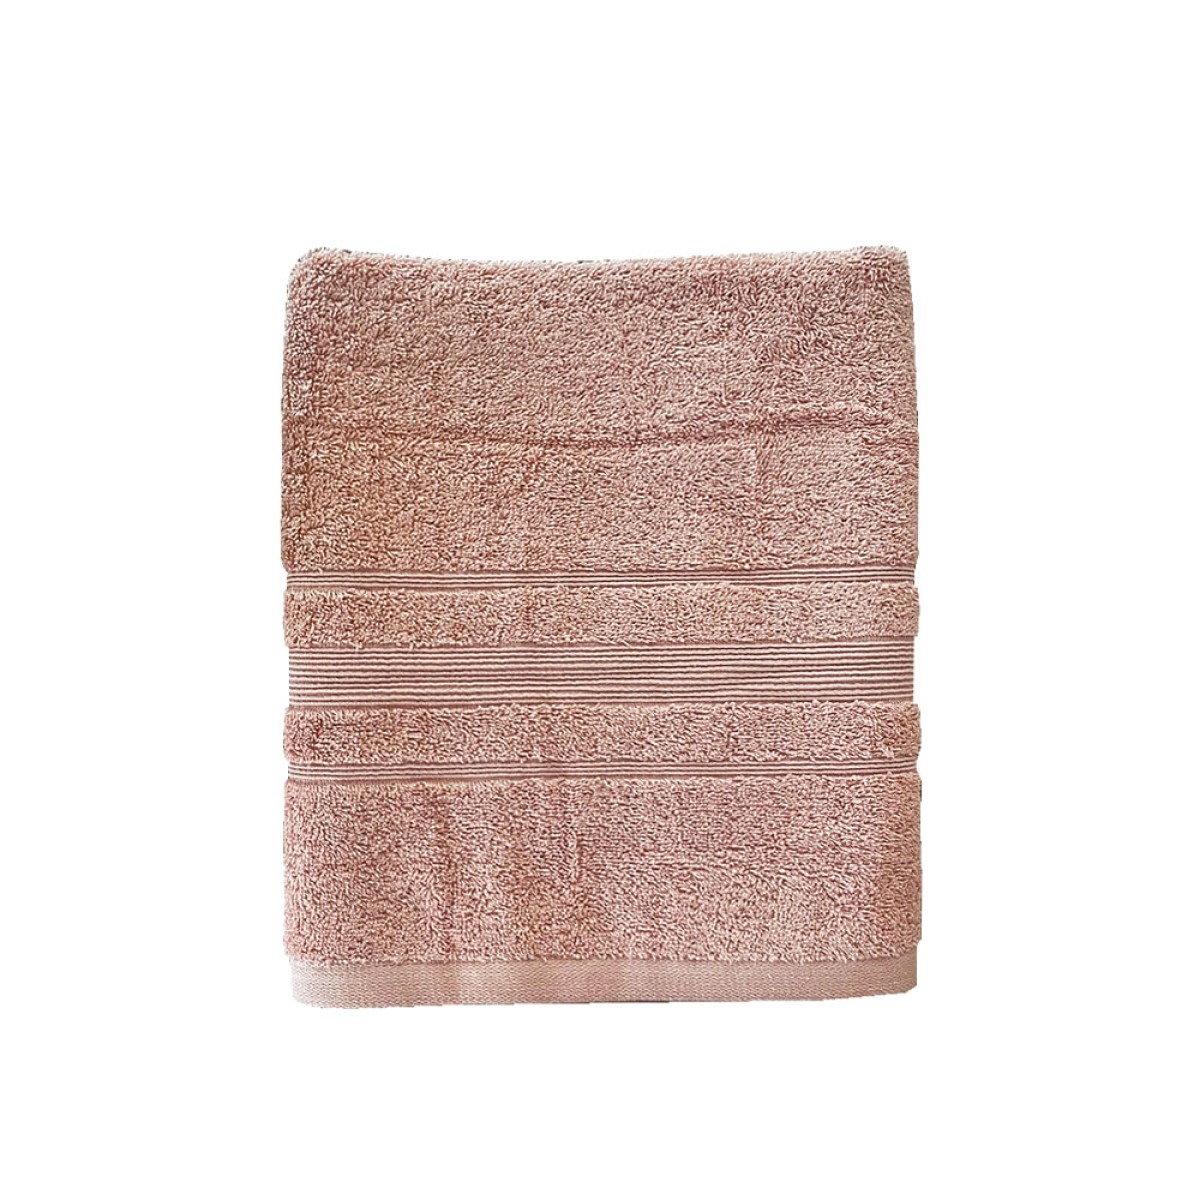 Πετσέτα Προσώπου 550grs (50x90) 100% Βαμβάκι με μπορντούρα με ανάγλυφο σχέδιο Sidirela Line Pink Nude E-3202-3